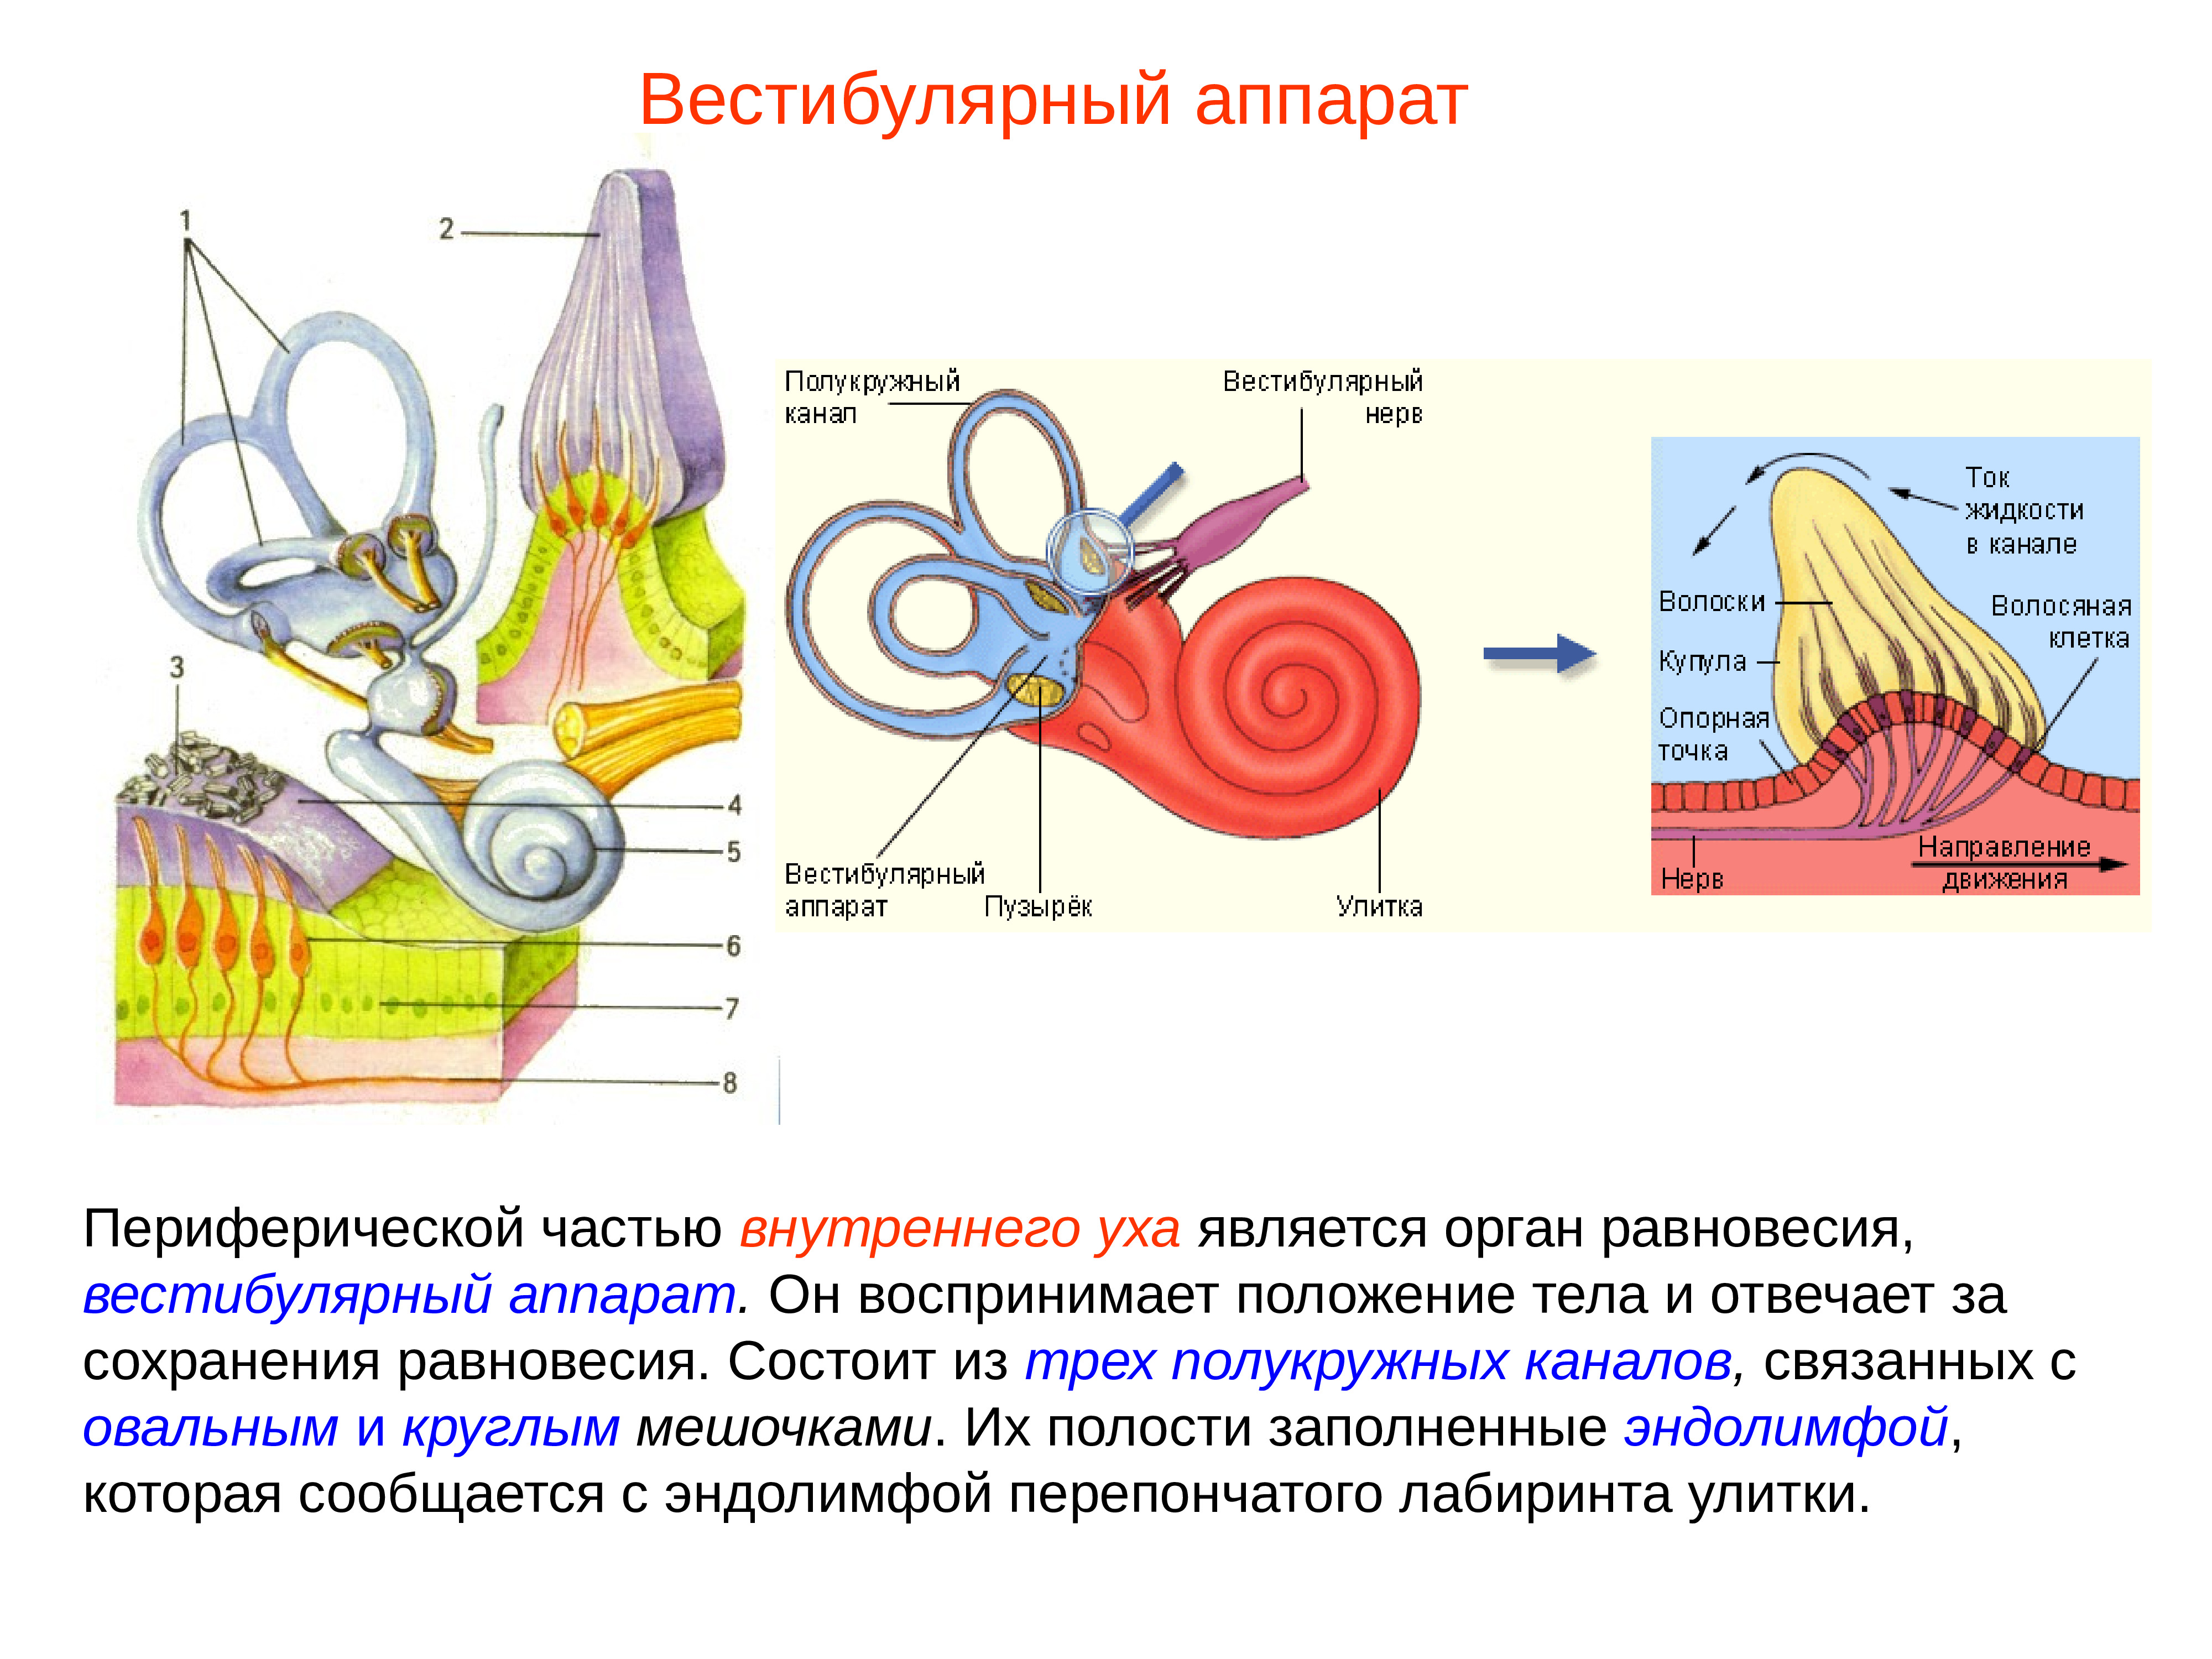 Орган равновесия вестибулярный. Внутреннее ухо вестибулярный анализатор анатомия. Строение строение вестибулярного аппарата. Полукружные каналы внутреннего уха анатомия. Схема периферического отдела вестибулярного анализатора.